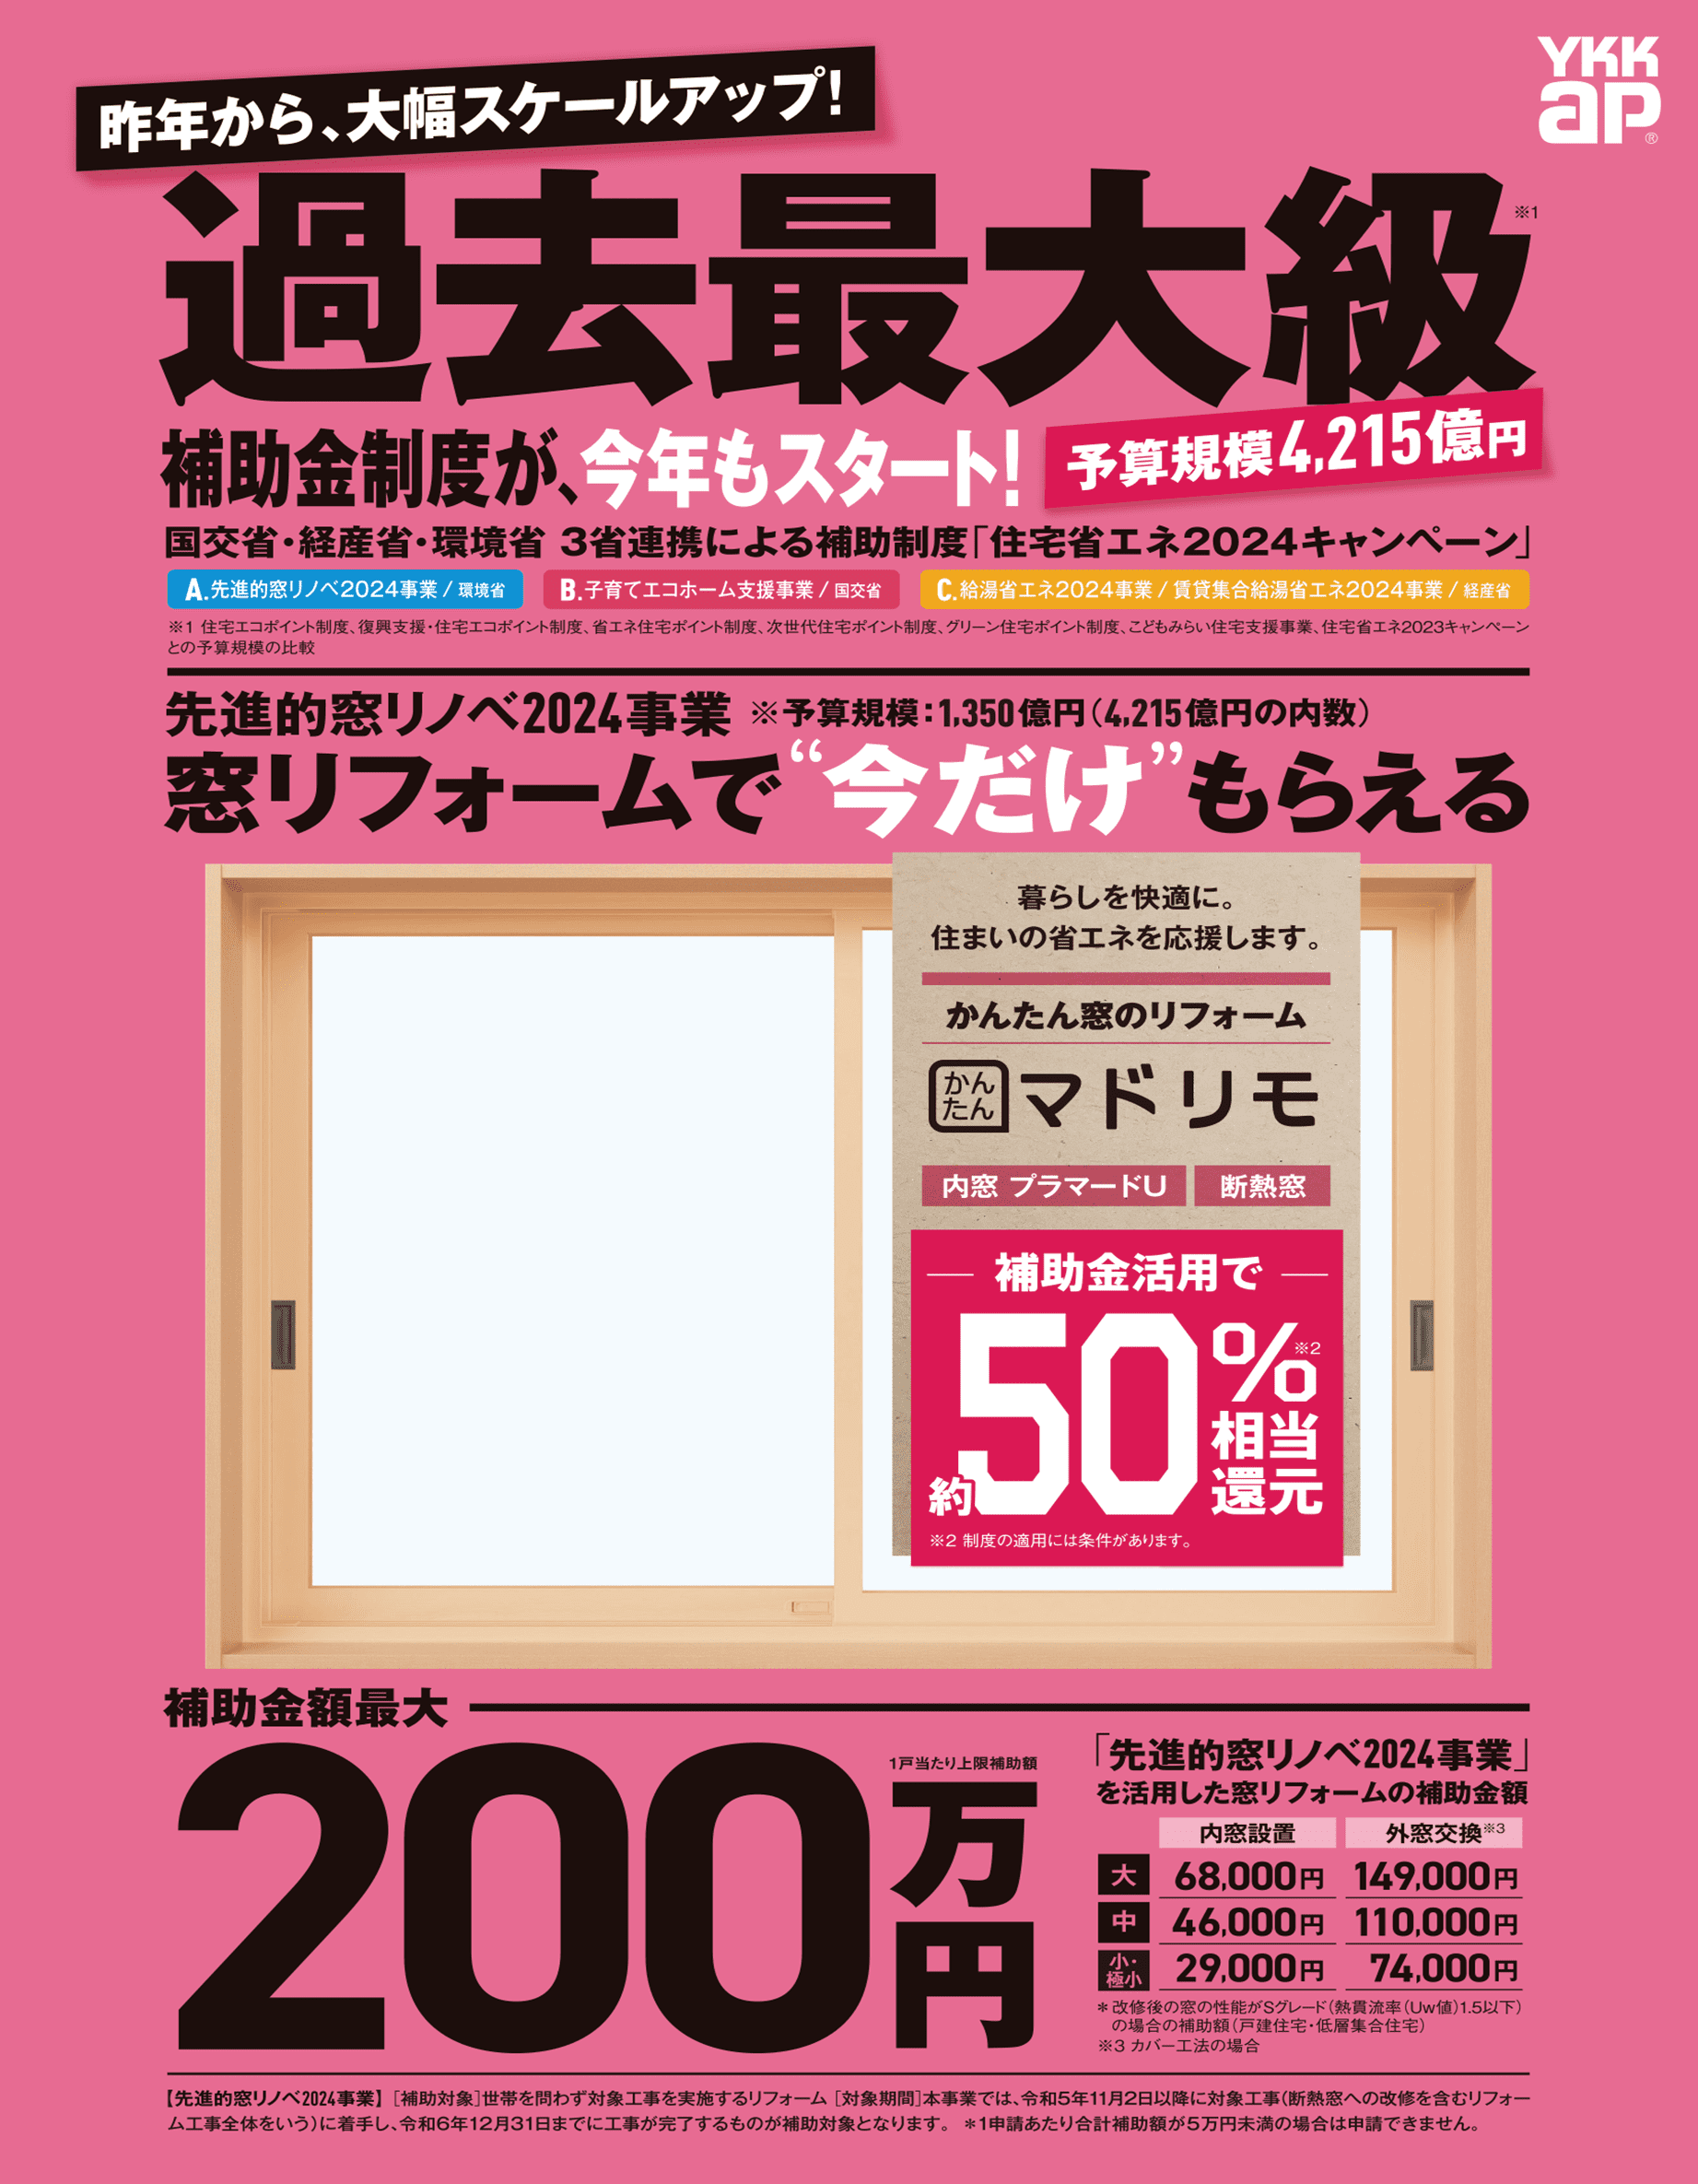 加須市の皆さま、温暖化に対し、内窓リフォームは効果ある投資です。